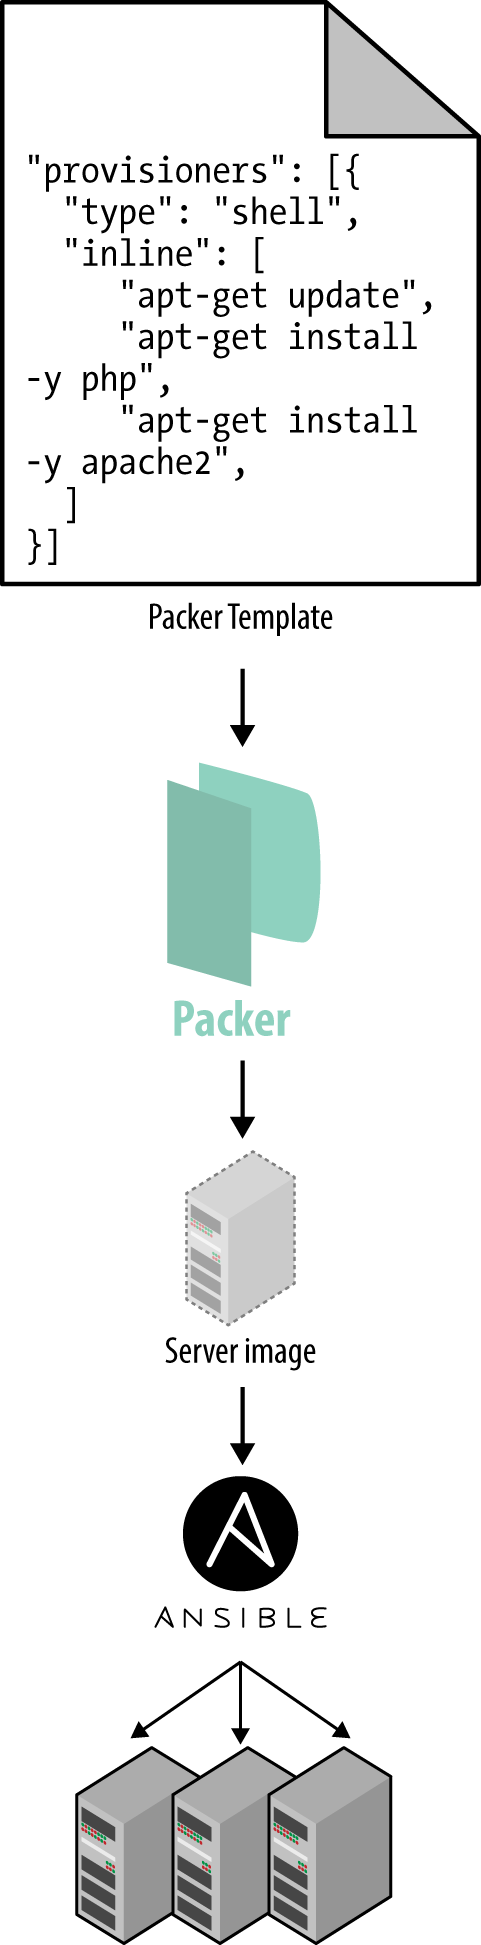 server templating tool like Packer